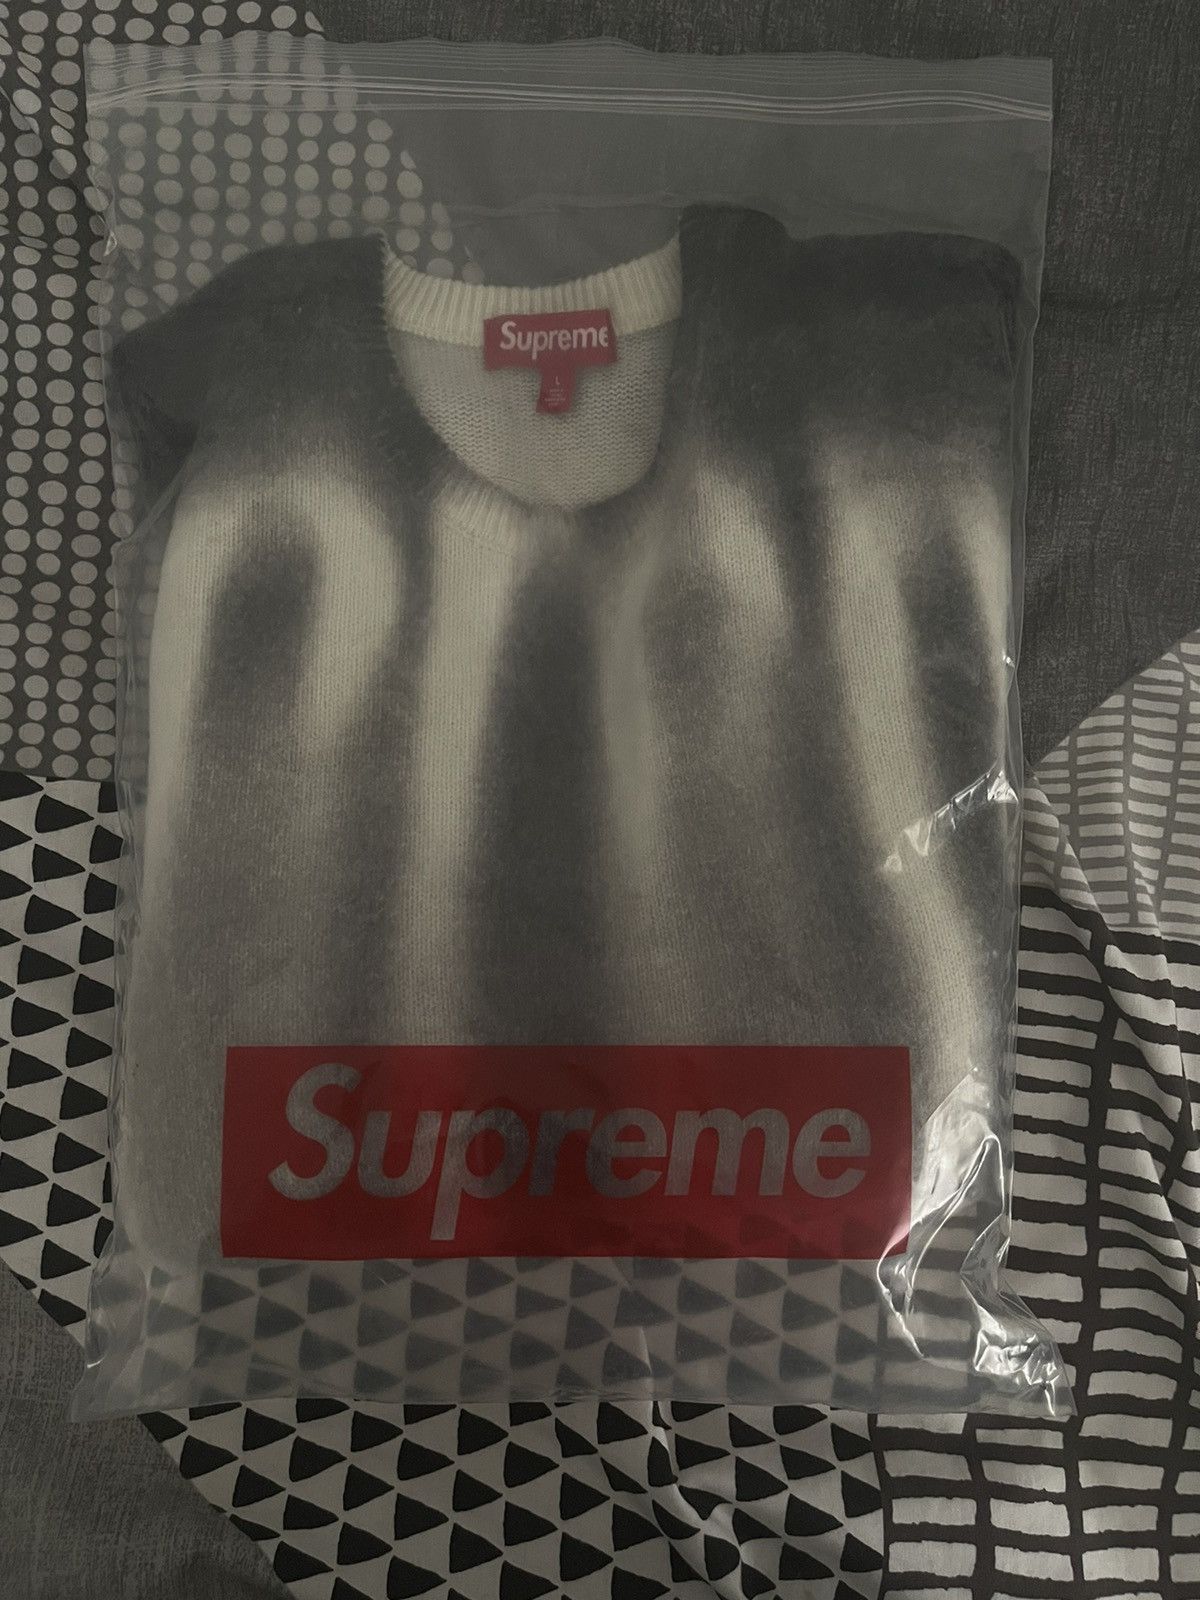 Supreme Supreme Blurred Logo Sweater | Grailed